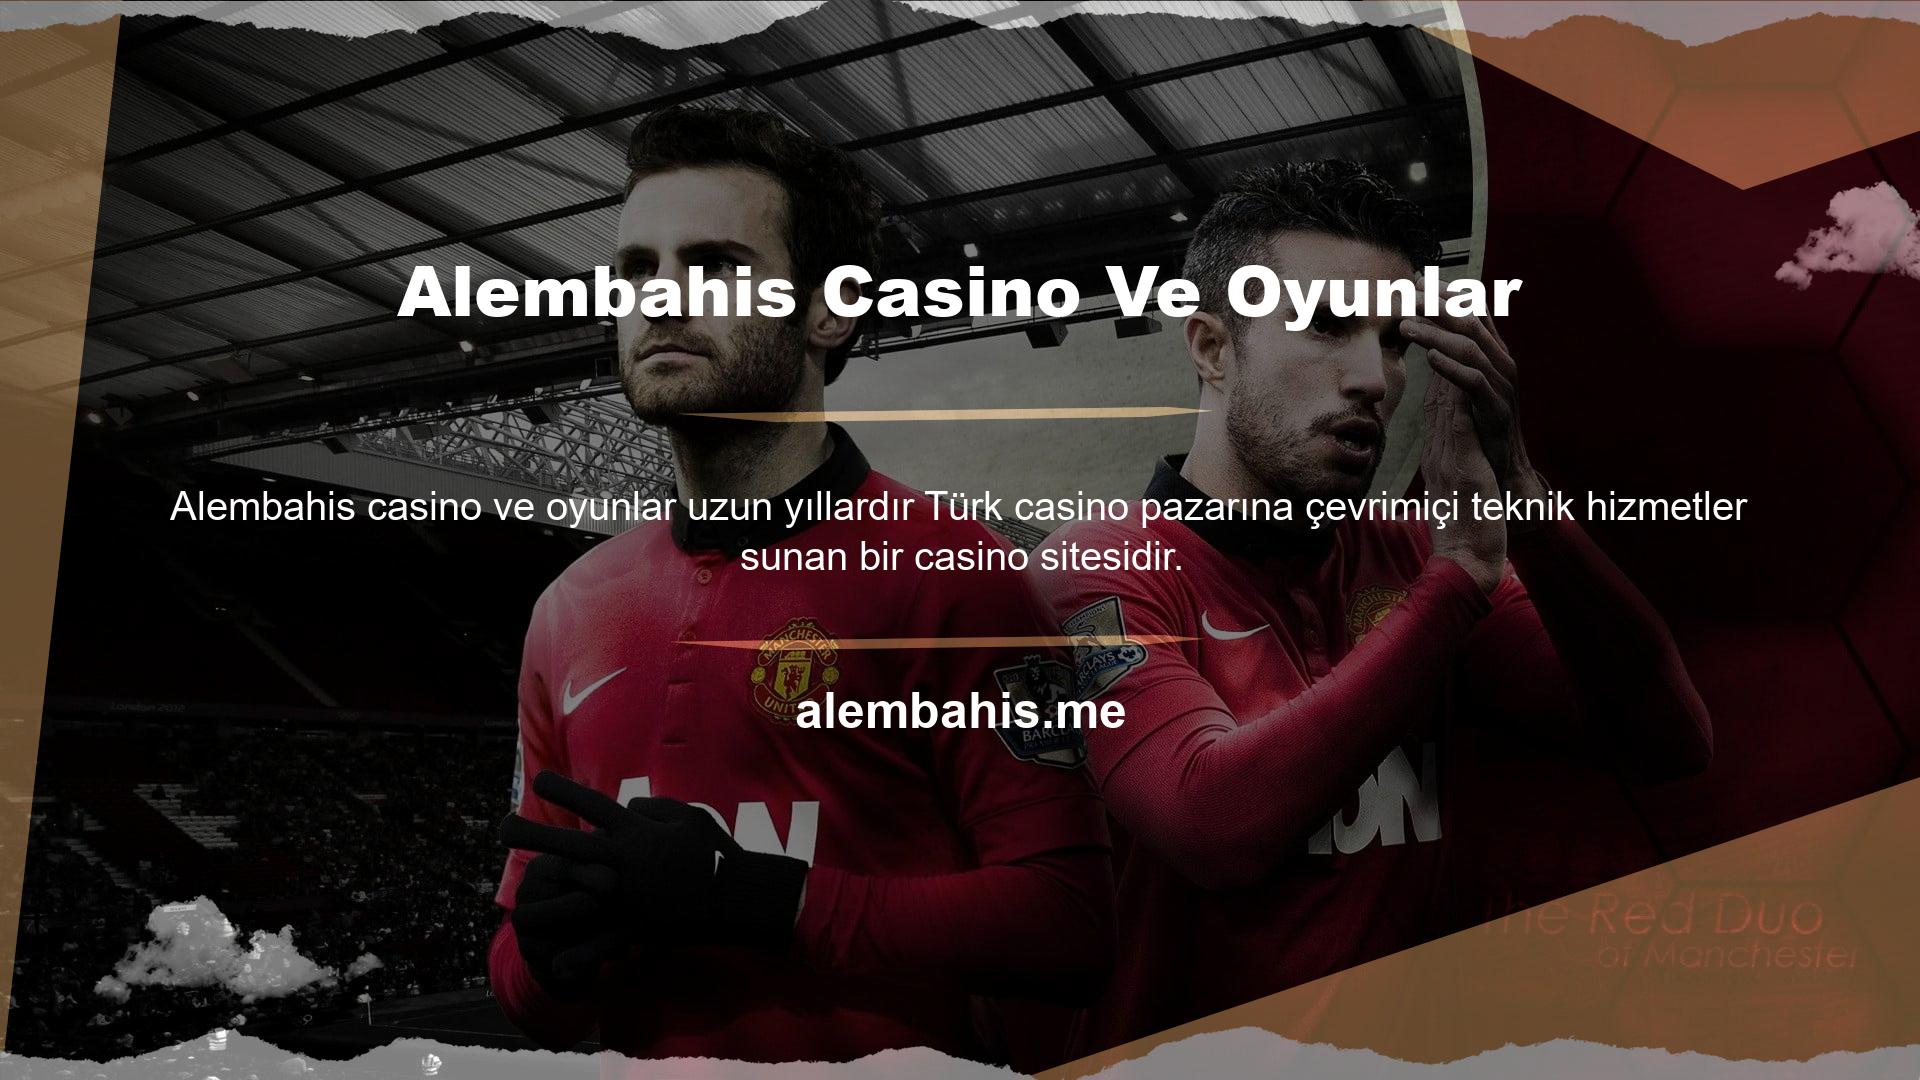 Aslında Türkiye'deki yerel yasalar, Alembahis gibi yasadışı casino sitelerinin ülkede casino oyunları sunmasını yasaklamaktadır